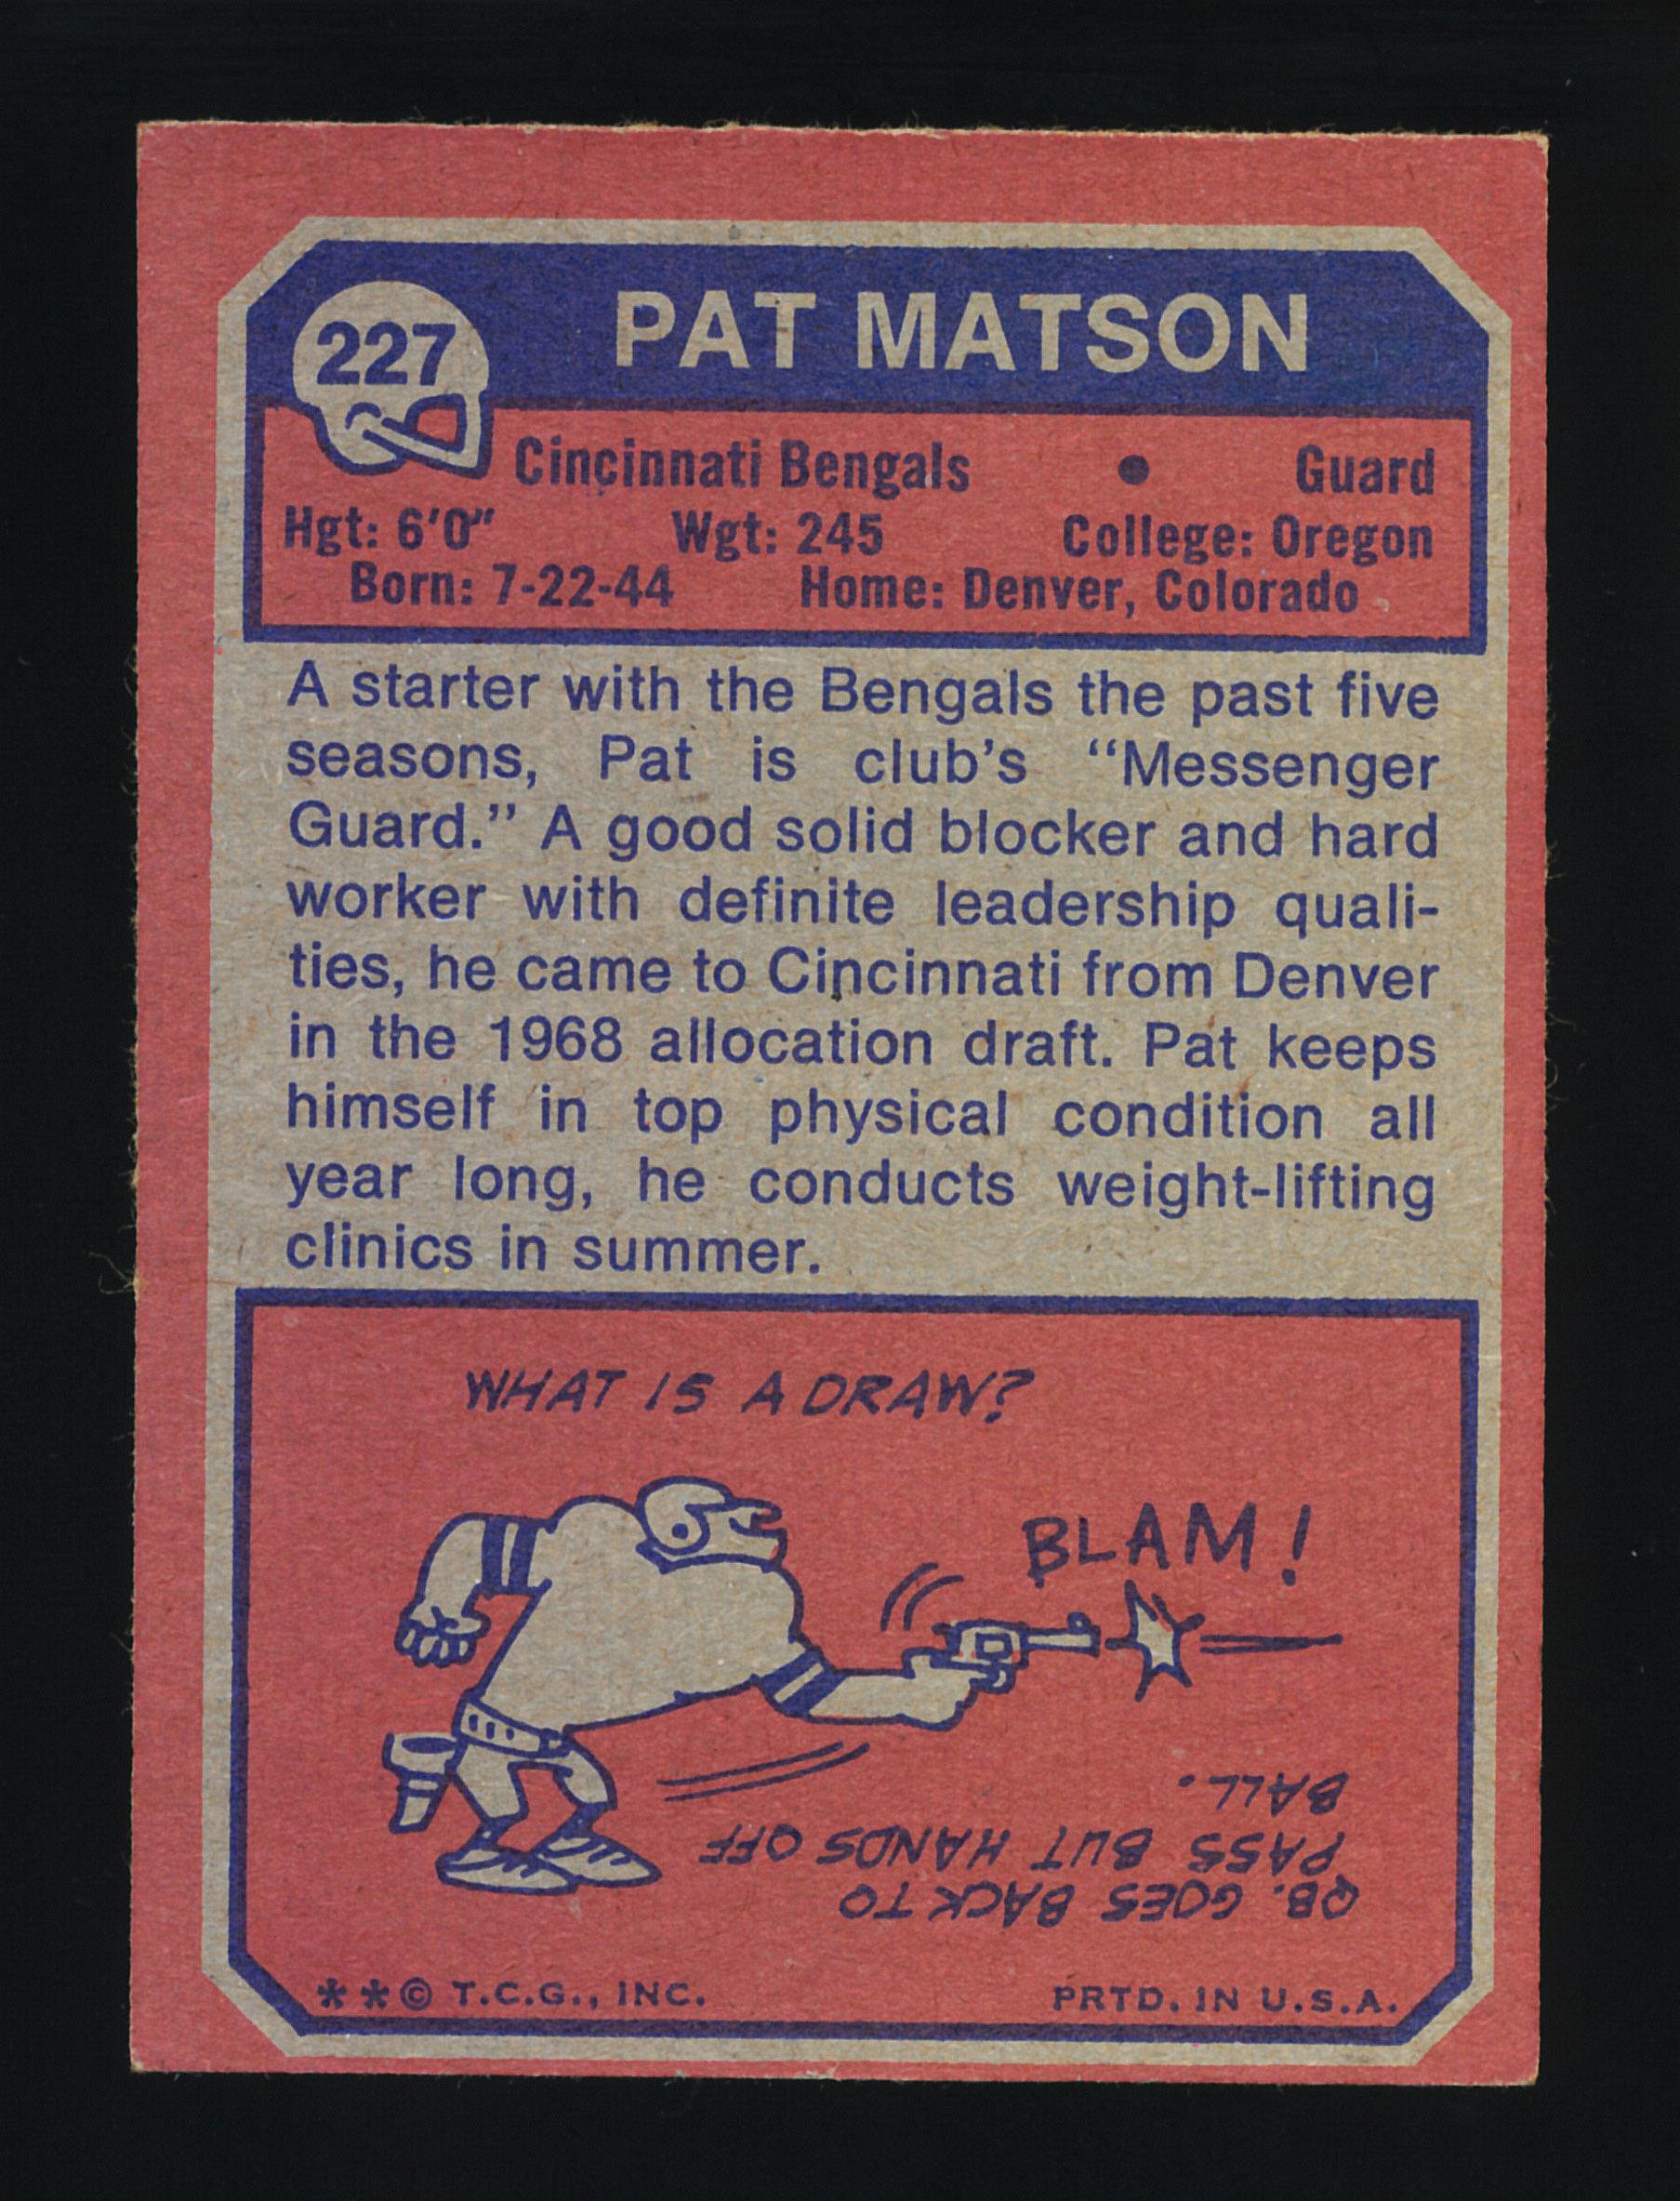 1973 Topps Football Card #227 Pat Matson Cincinnati Bengals